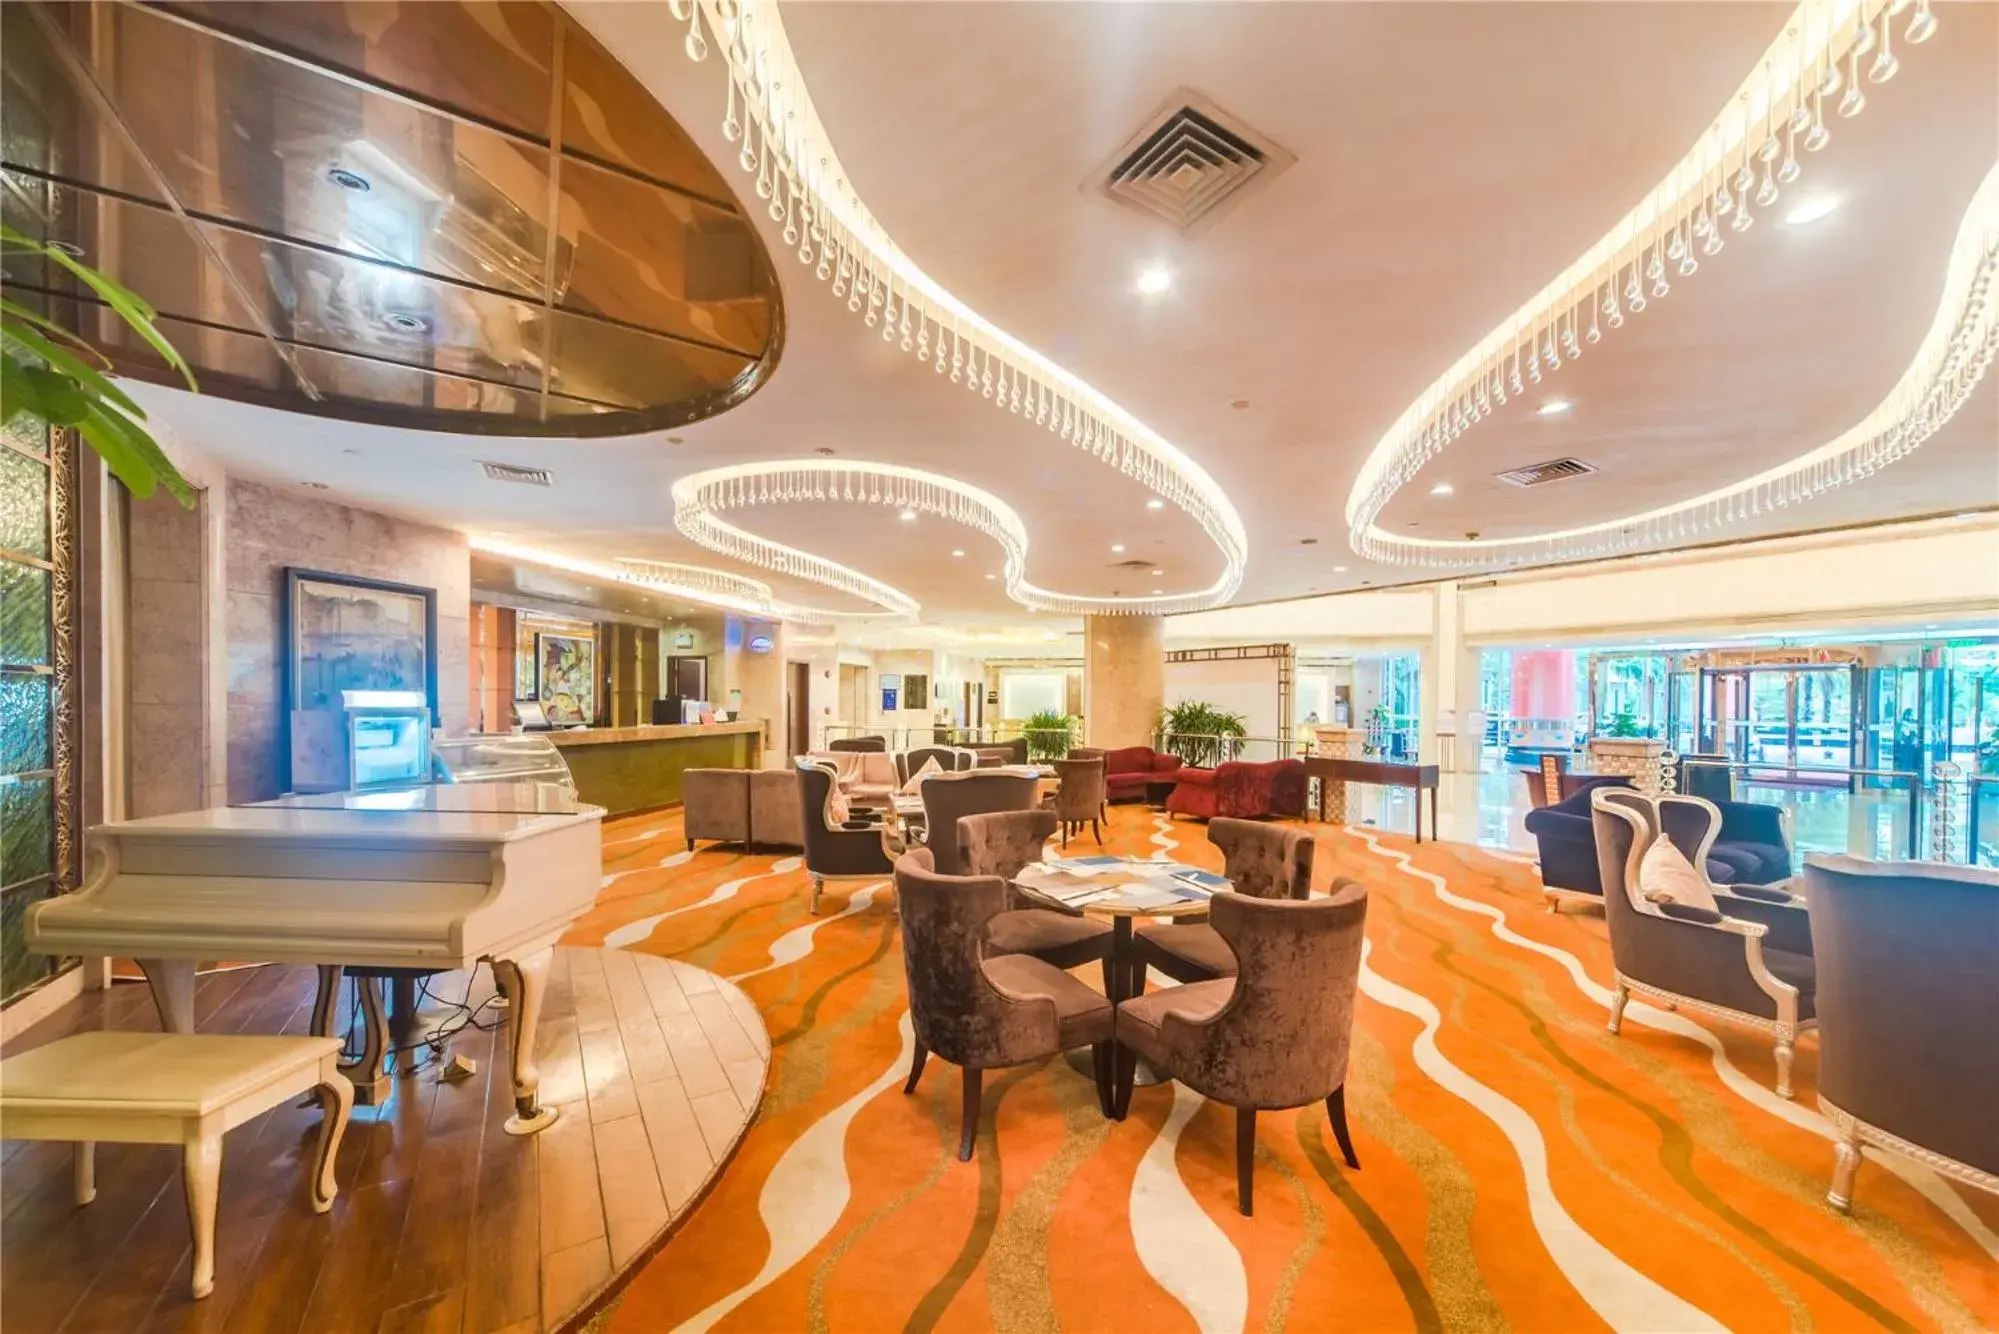 Restaurant/places to eat, Lounge/Bar in Haikou Mingguang Shengyi Hotel (Previous Mingguang International Hotel)